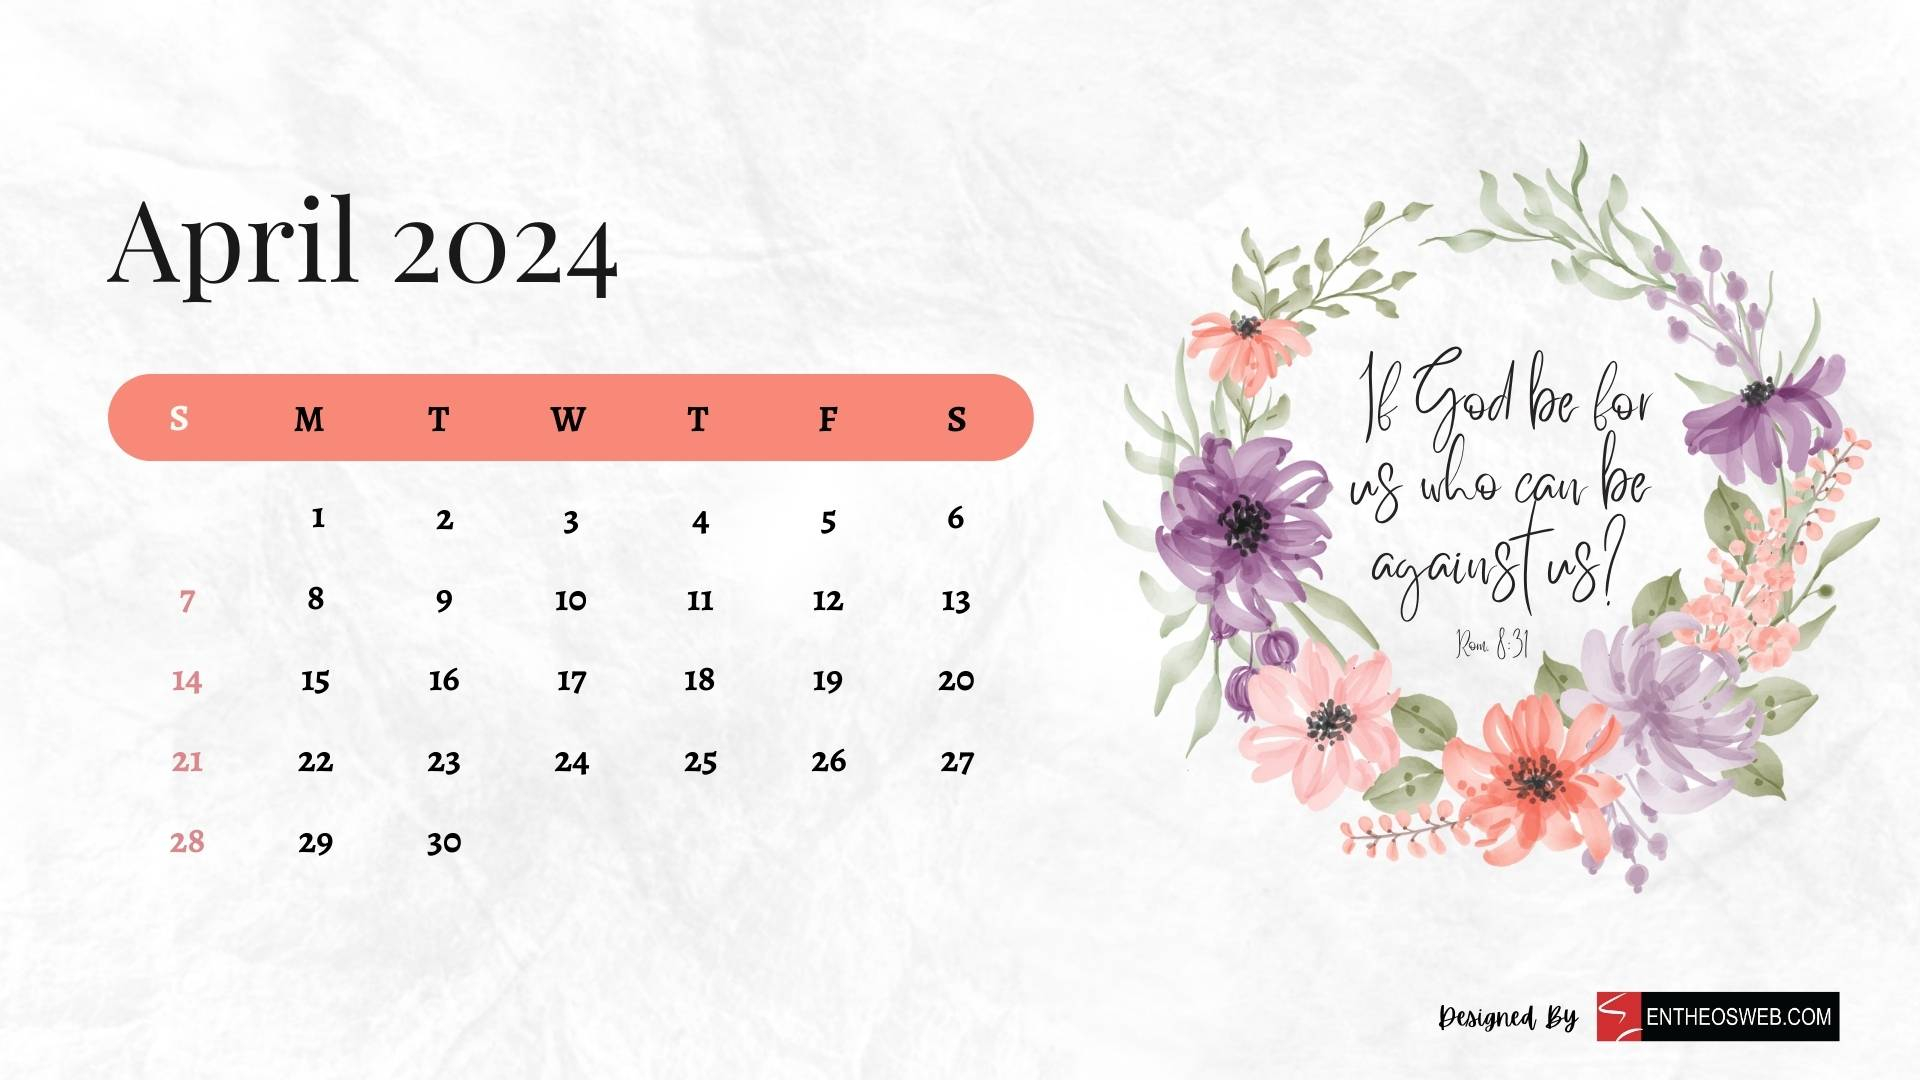 2024 Christian Calendar Wallpaper | Entheosweb regarding April 2024 Calendar Wallpaper Desktop